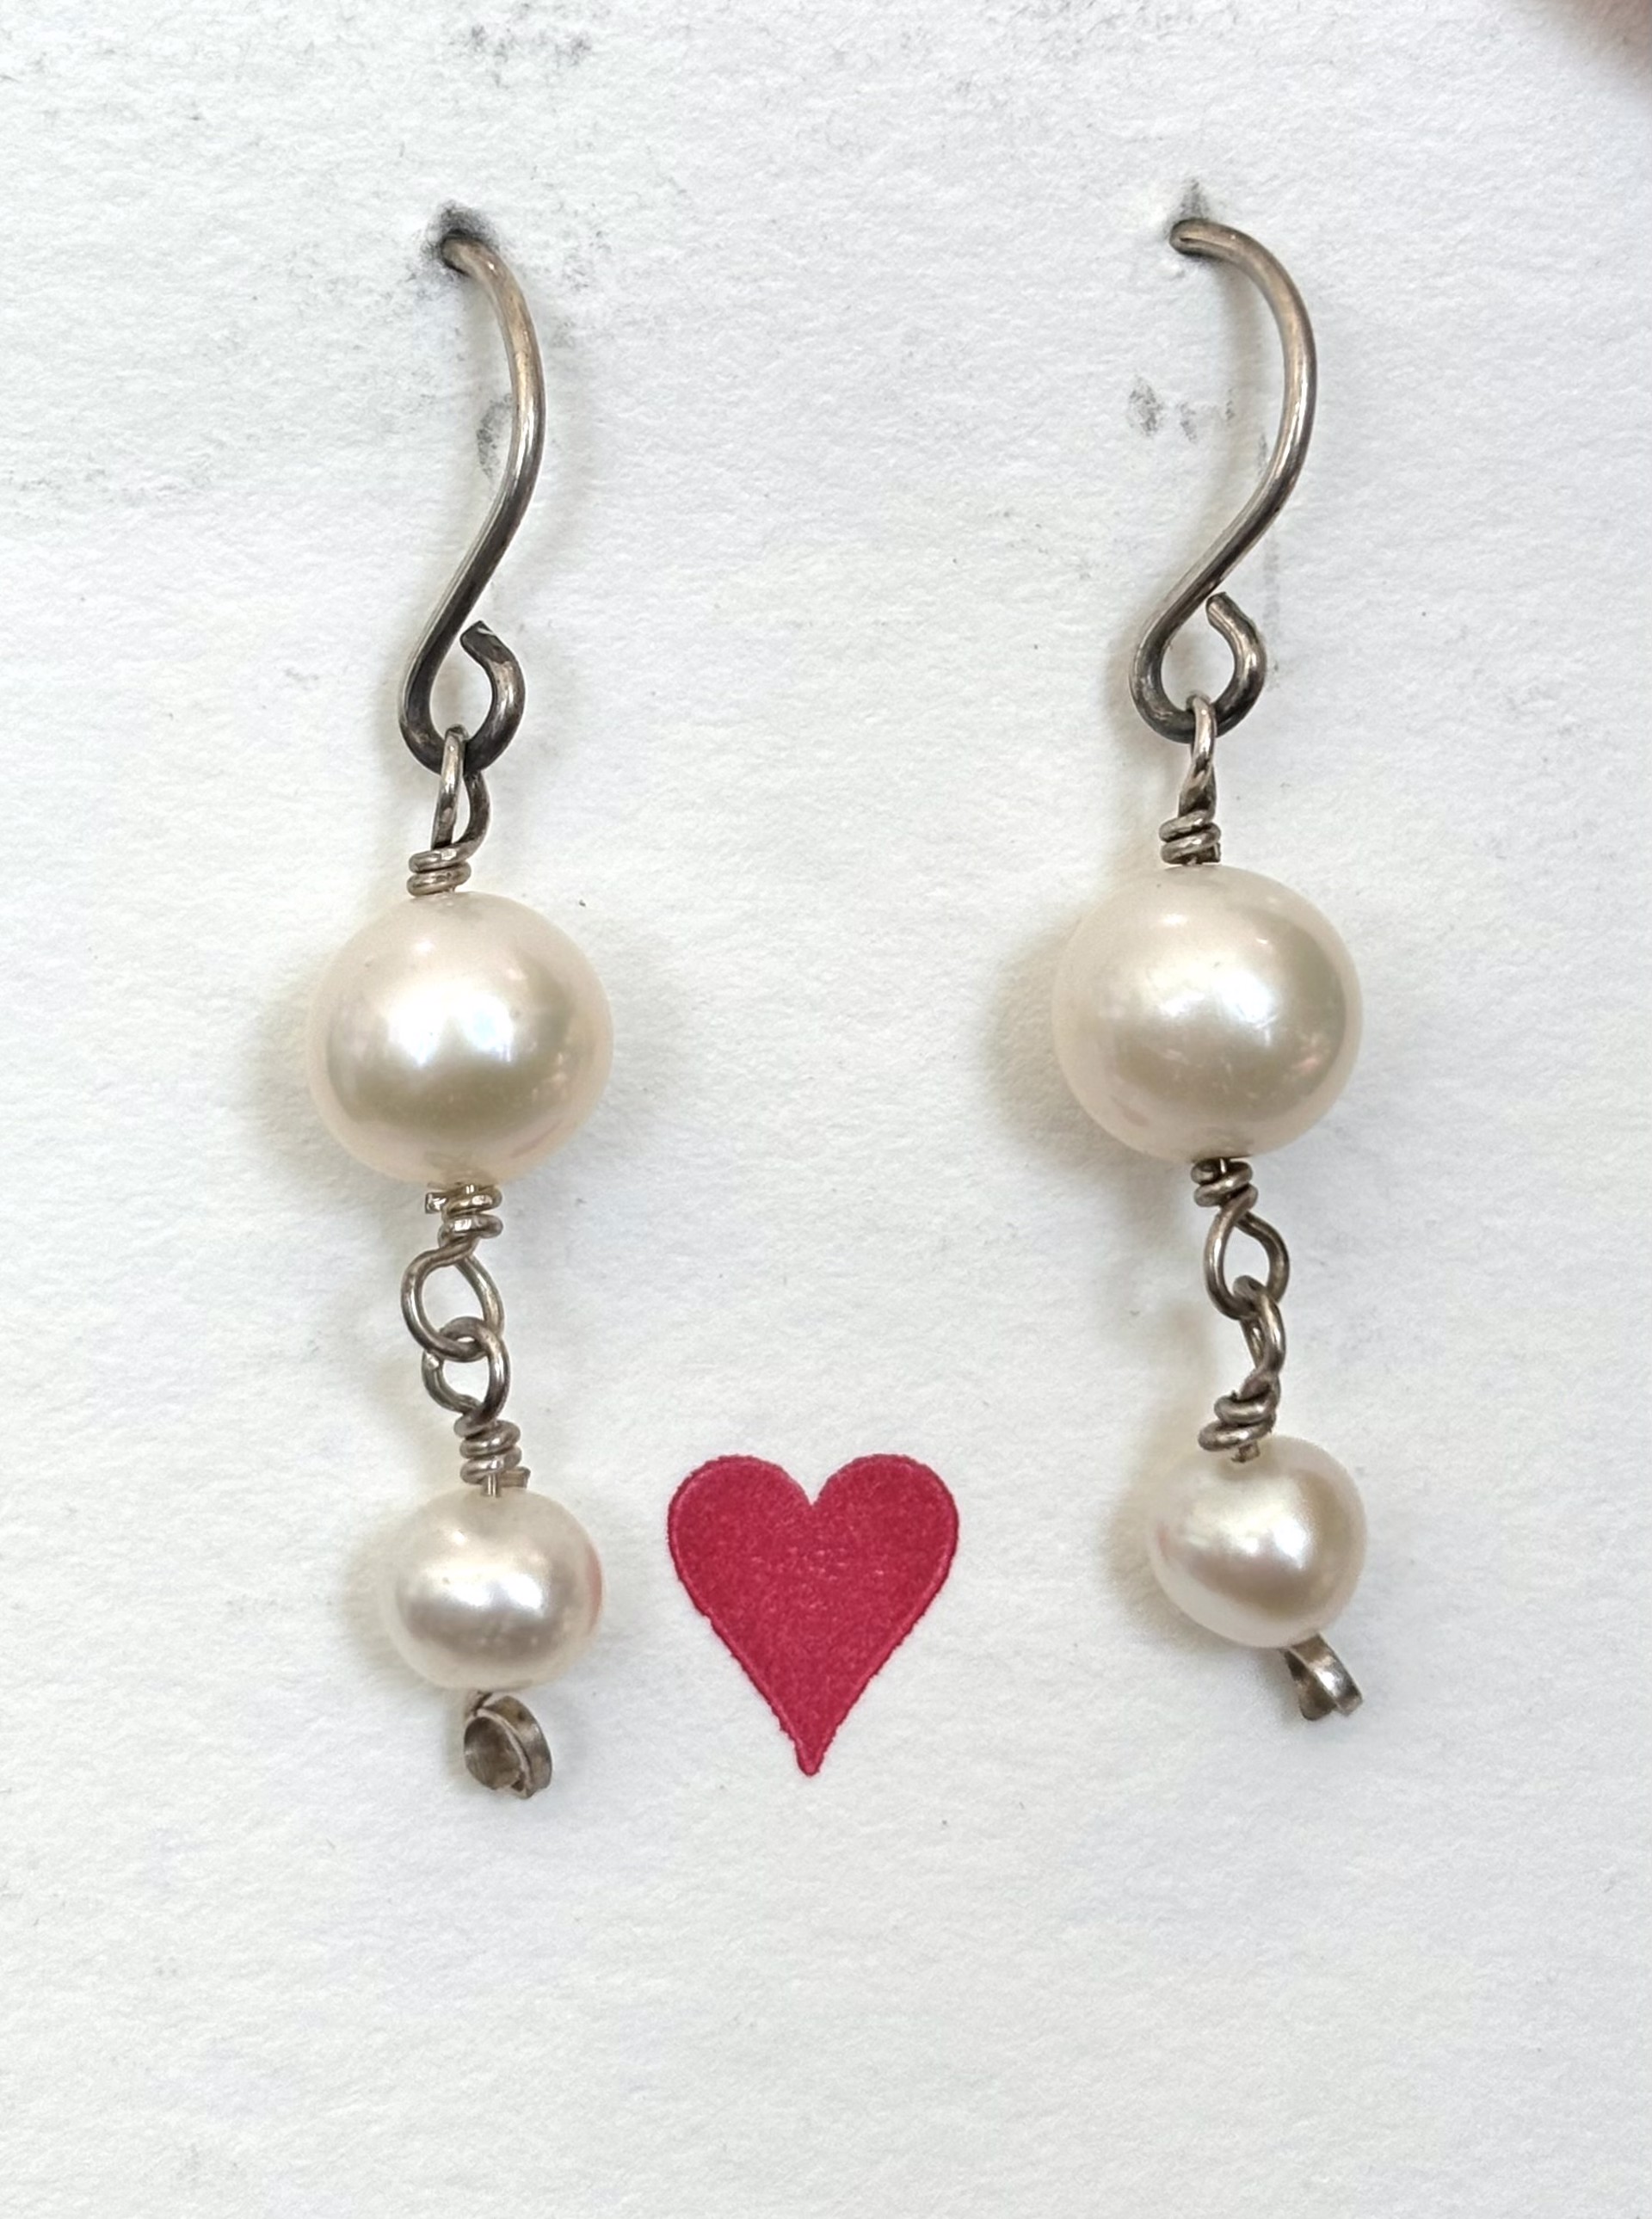 Pearl and Sterling Silver Earrings by Emelie Hebert